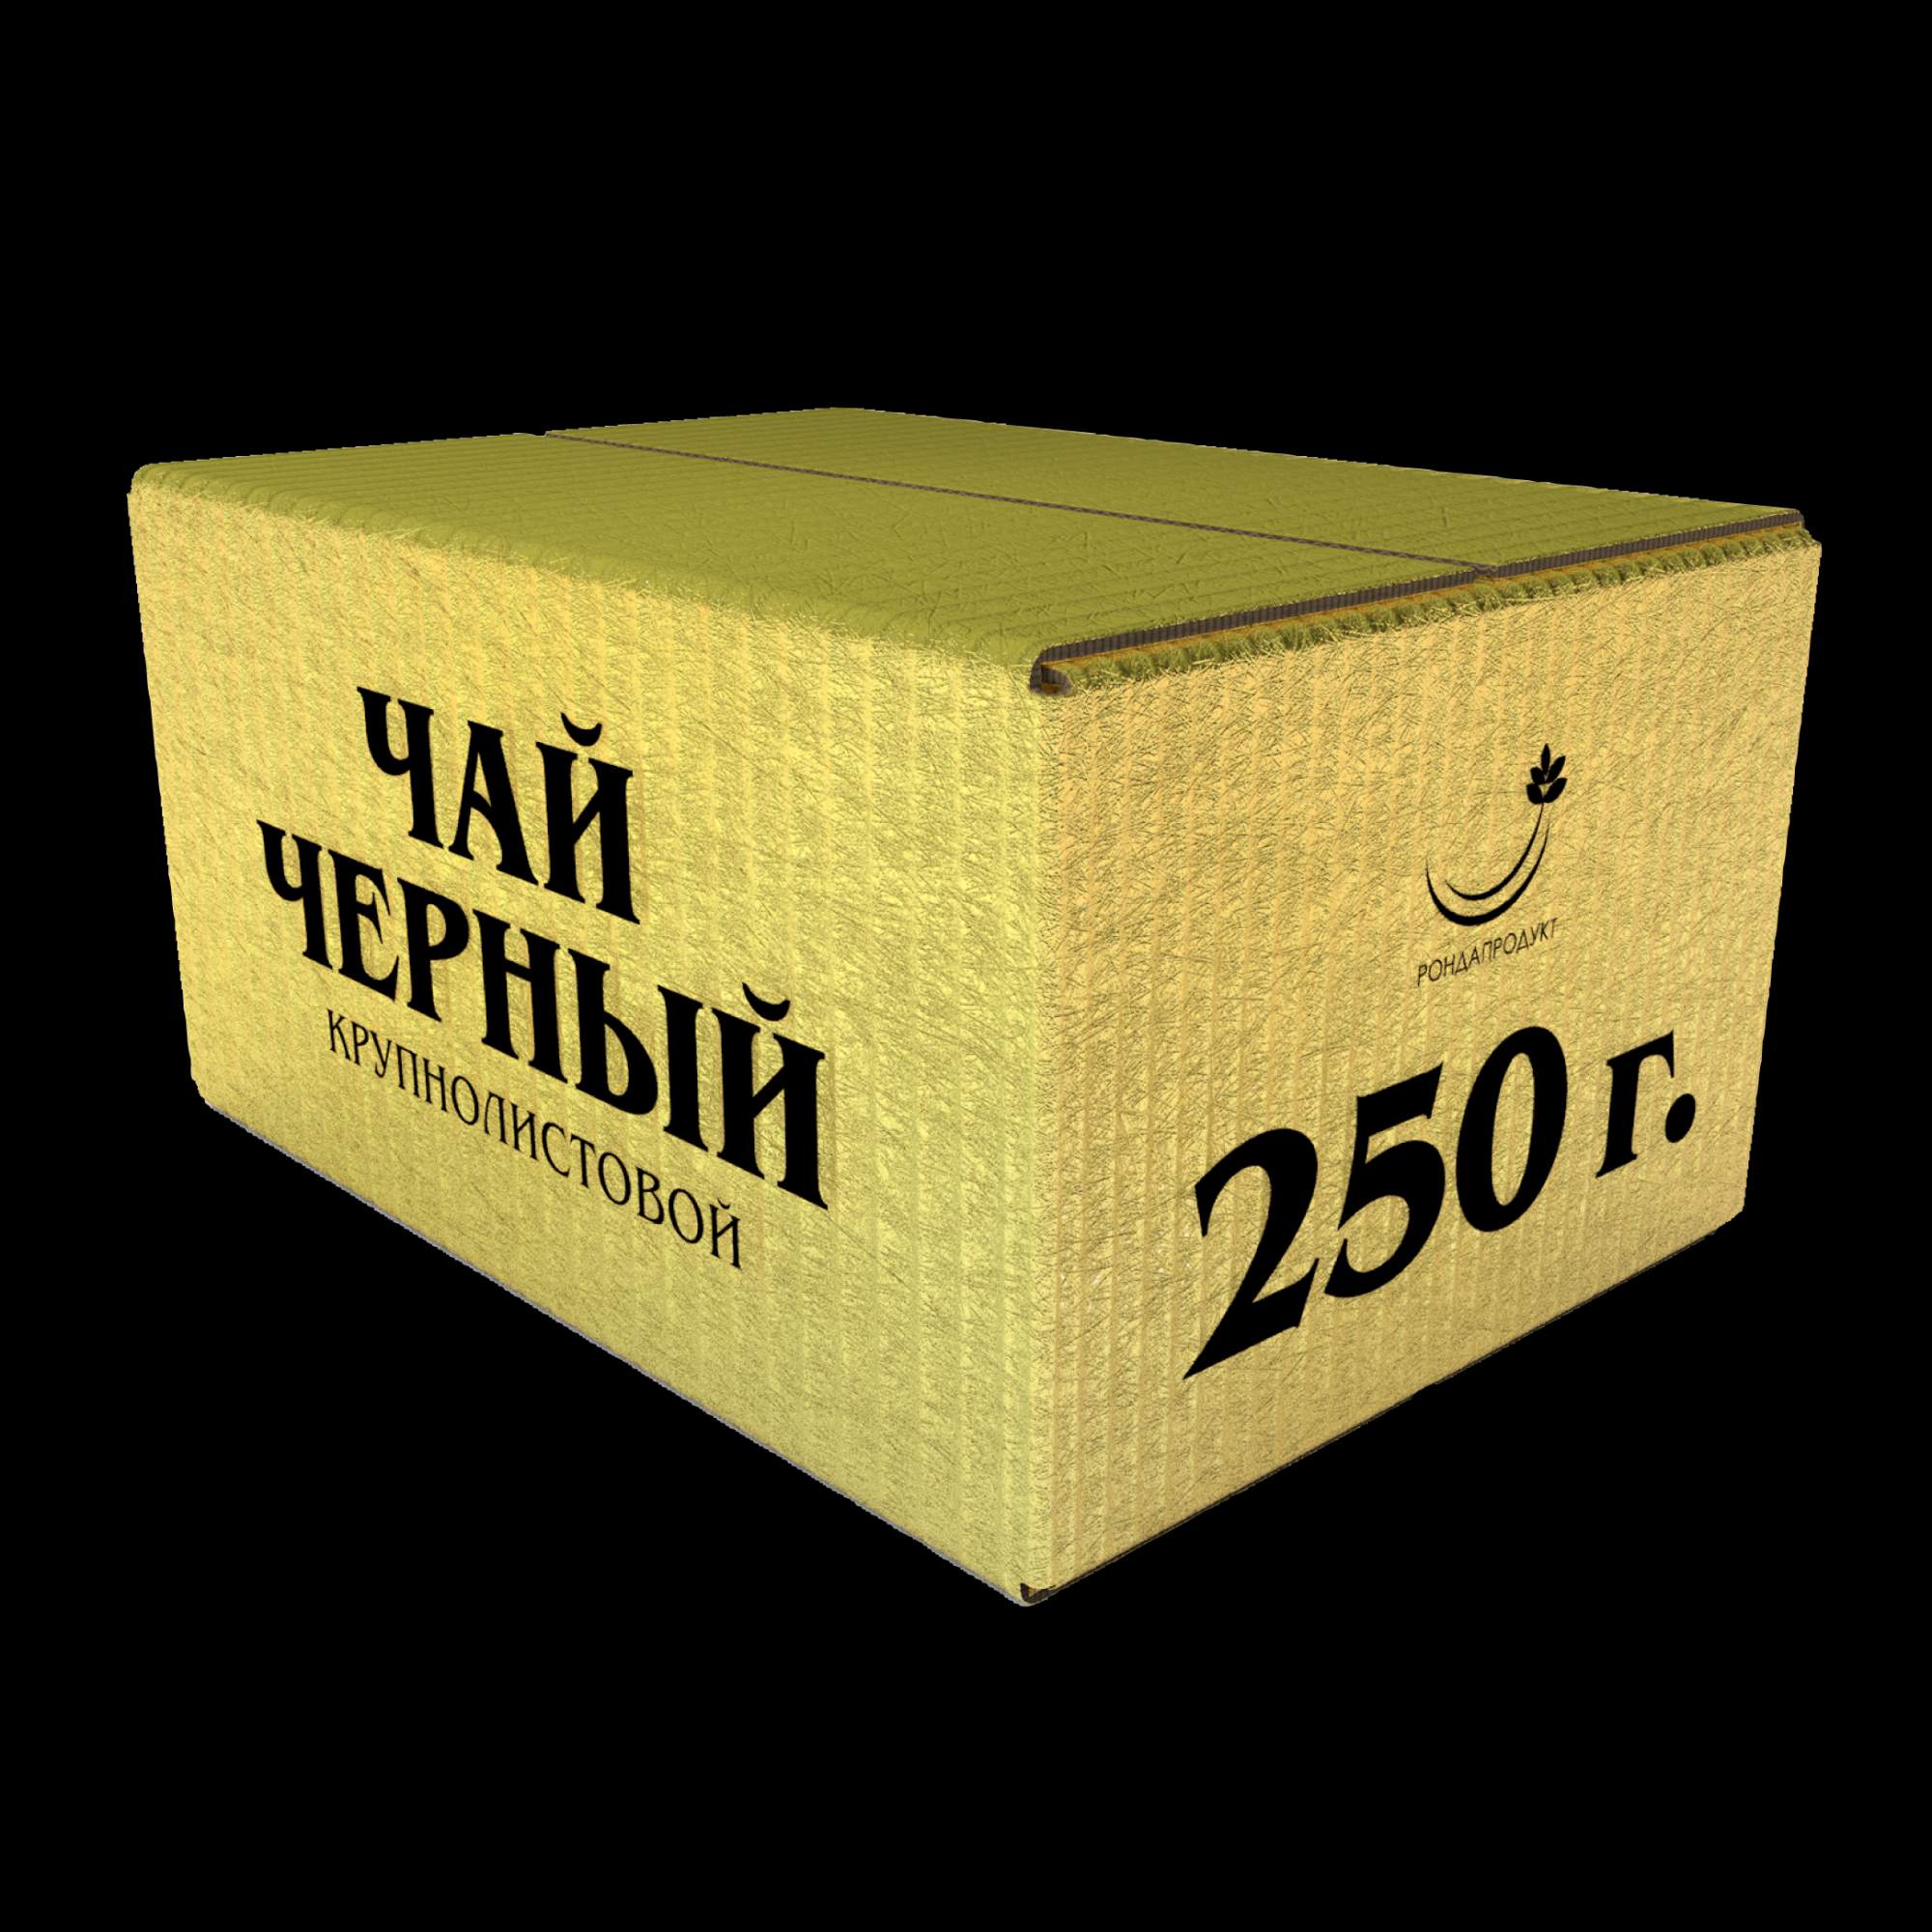 Чай Рондапродукт черный крупнолистовой ОРА STD 901 иранский, 0,25 кг